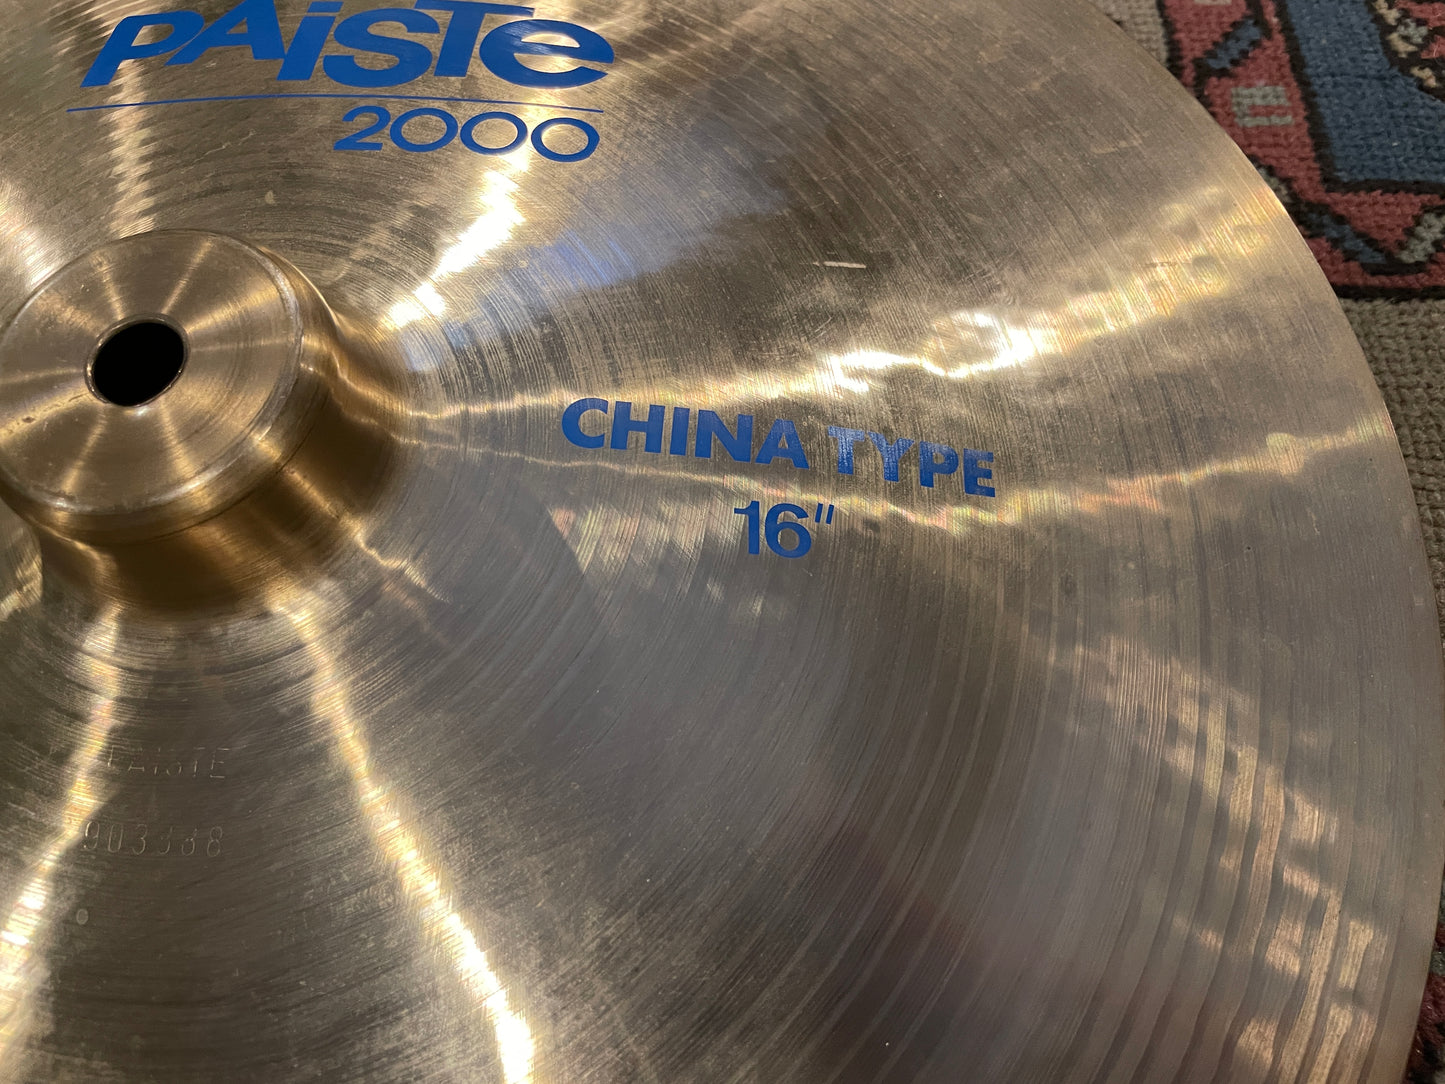 16" Paiste 2000 China Type Cymbal 840g